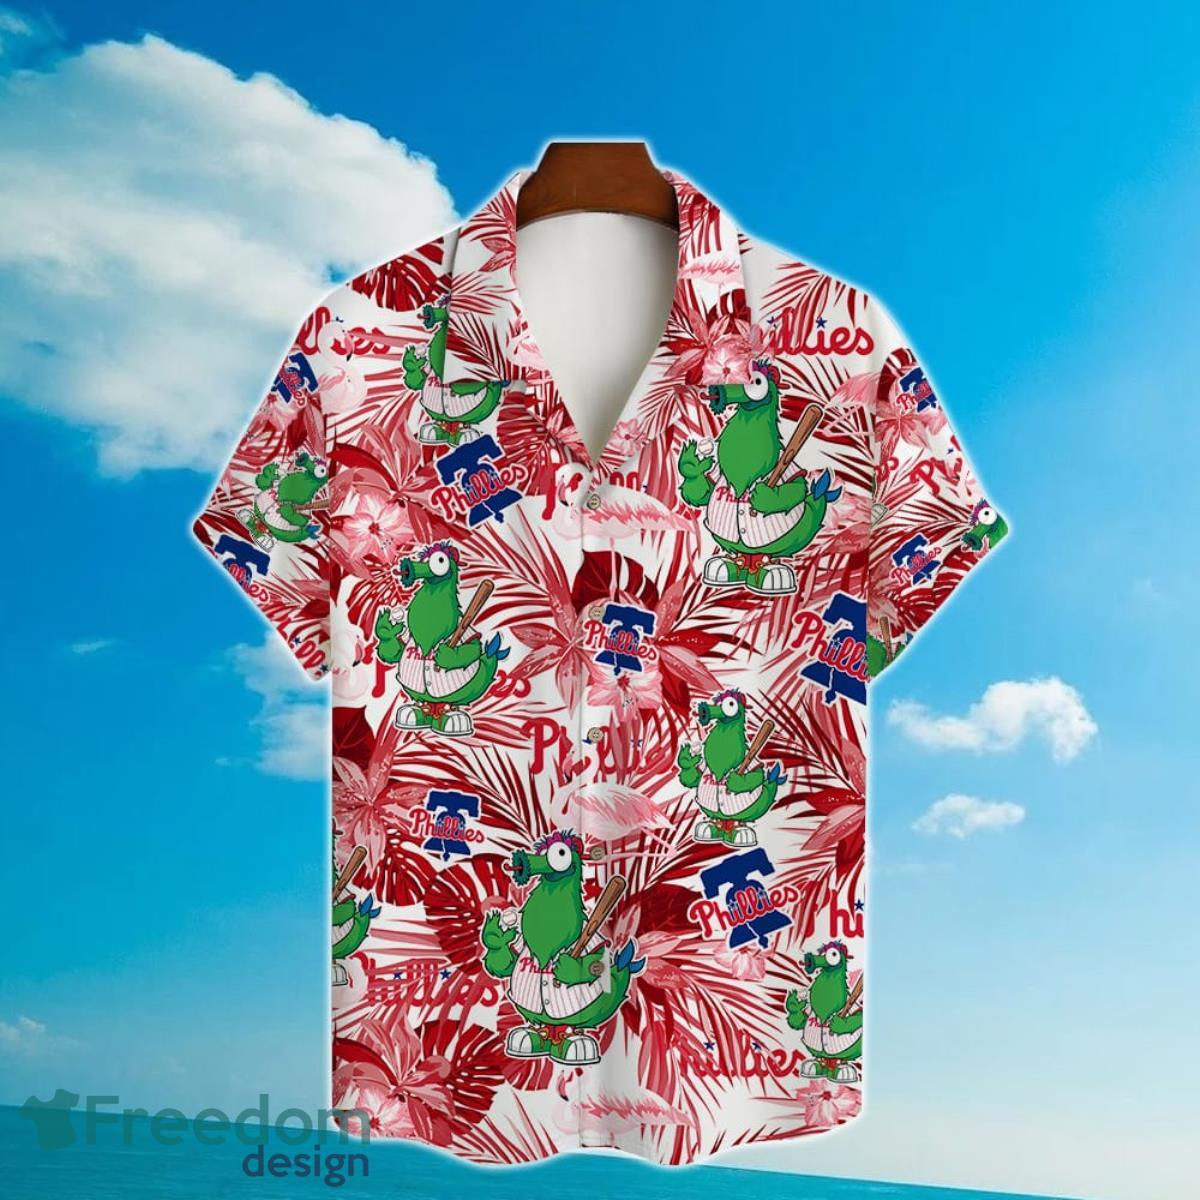 New York Yankees Major League Baseball Hawaiian Shirt 2023 Summer Gift -  Freedomdesign